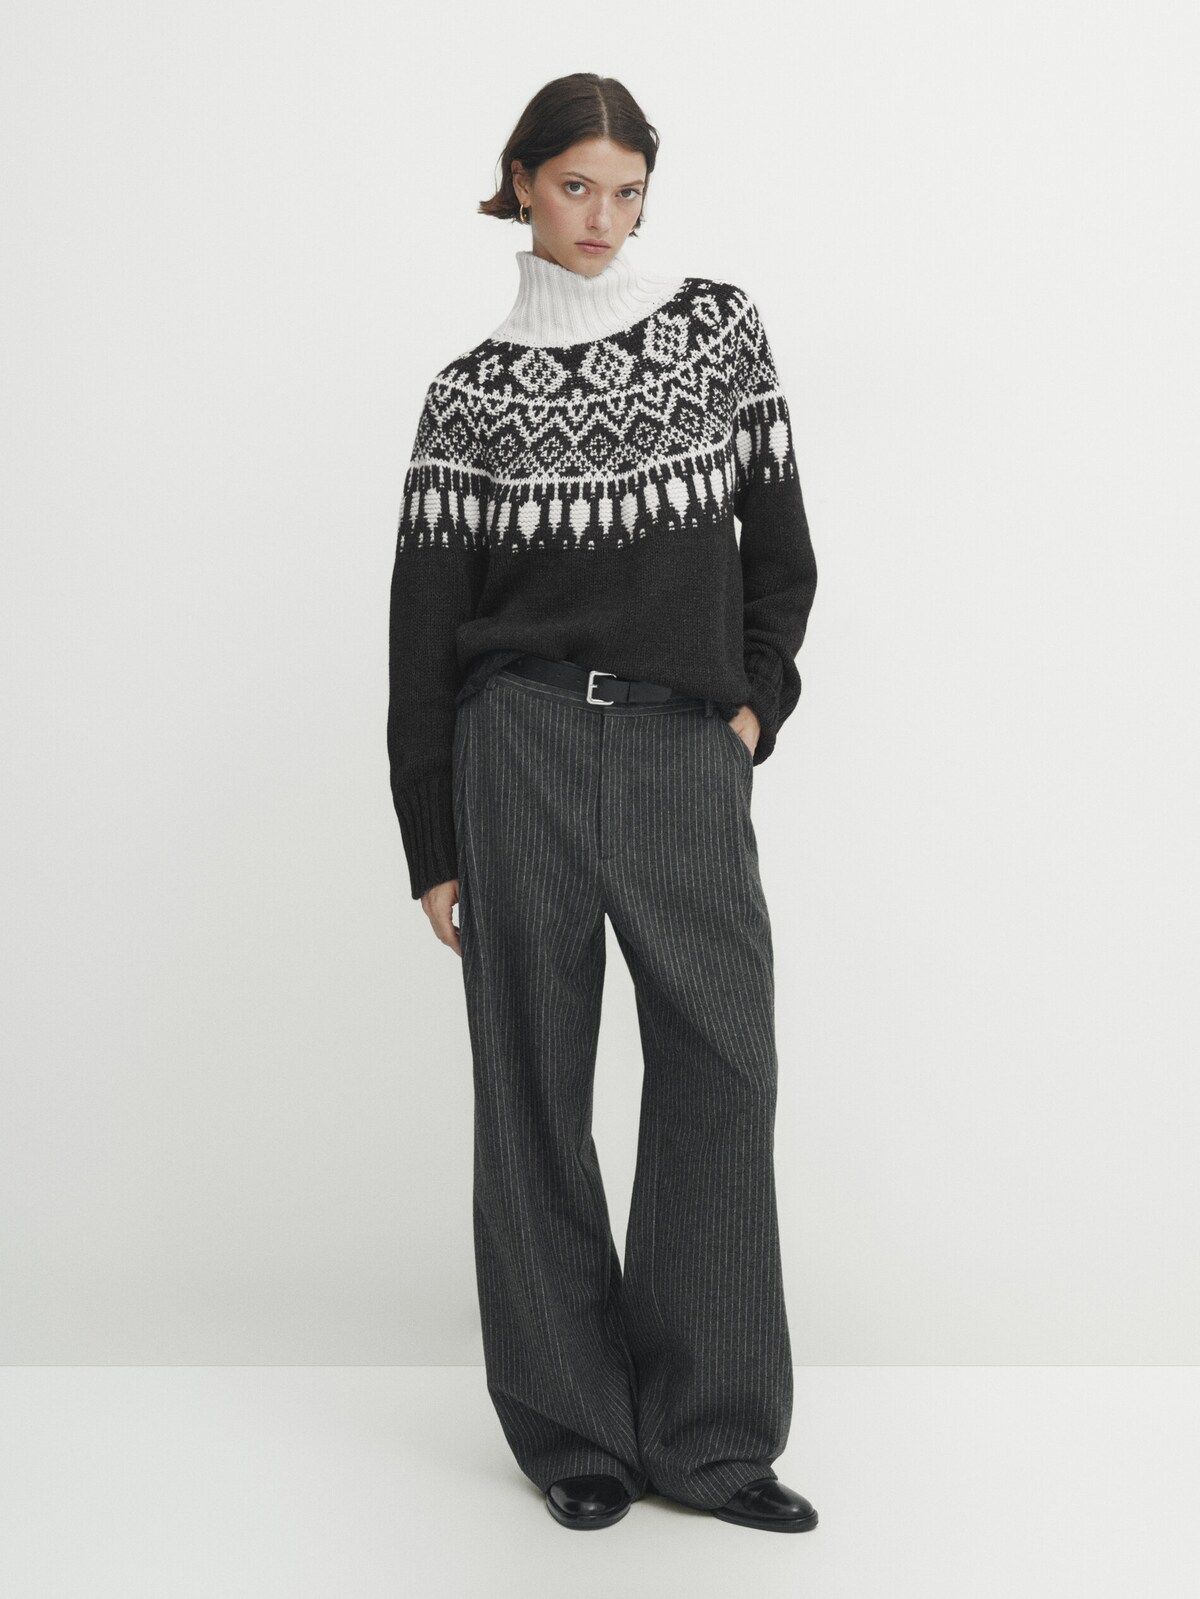 High neck jacquard knit sweater | Massimo Dutti UK